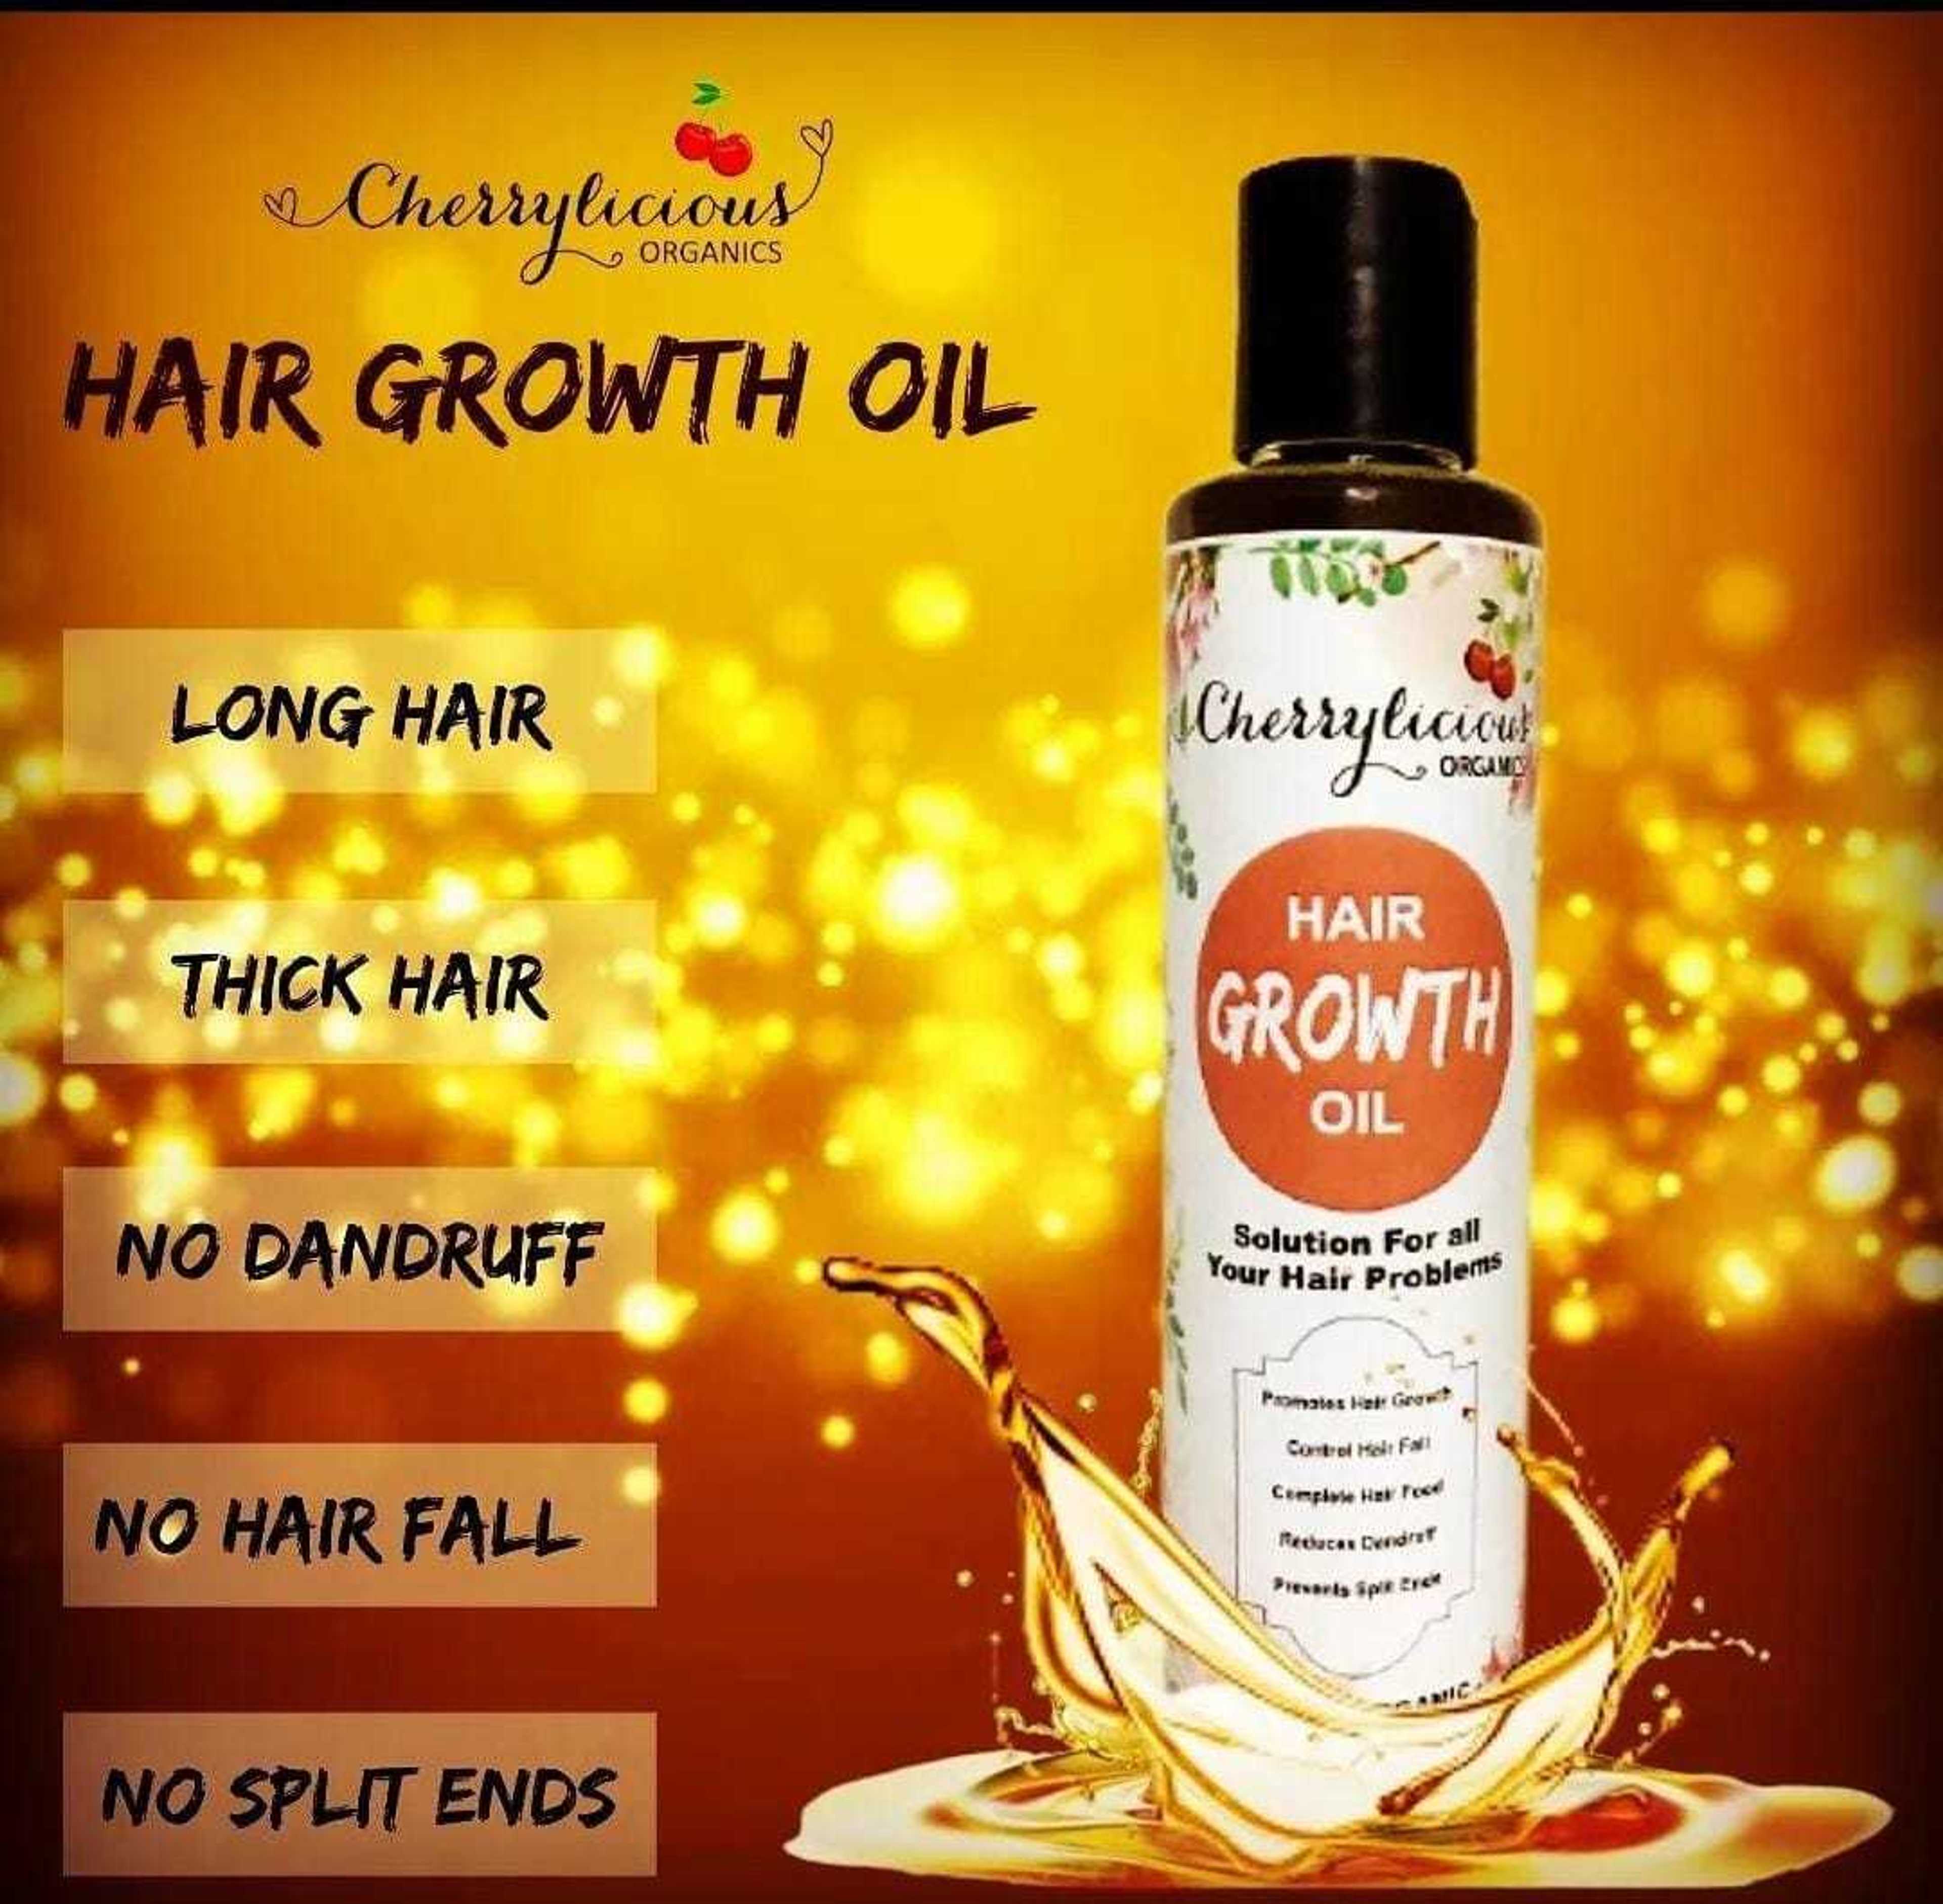 New Hair Growth Oil